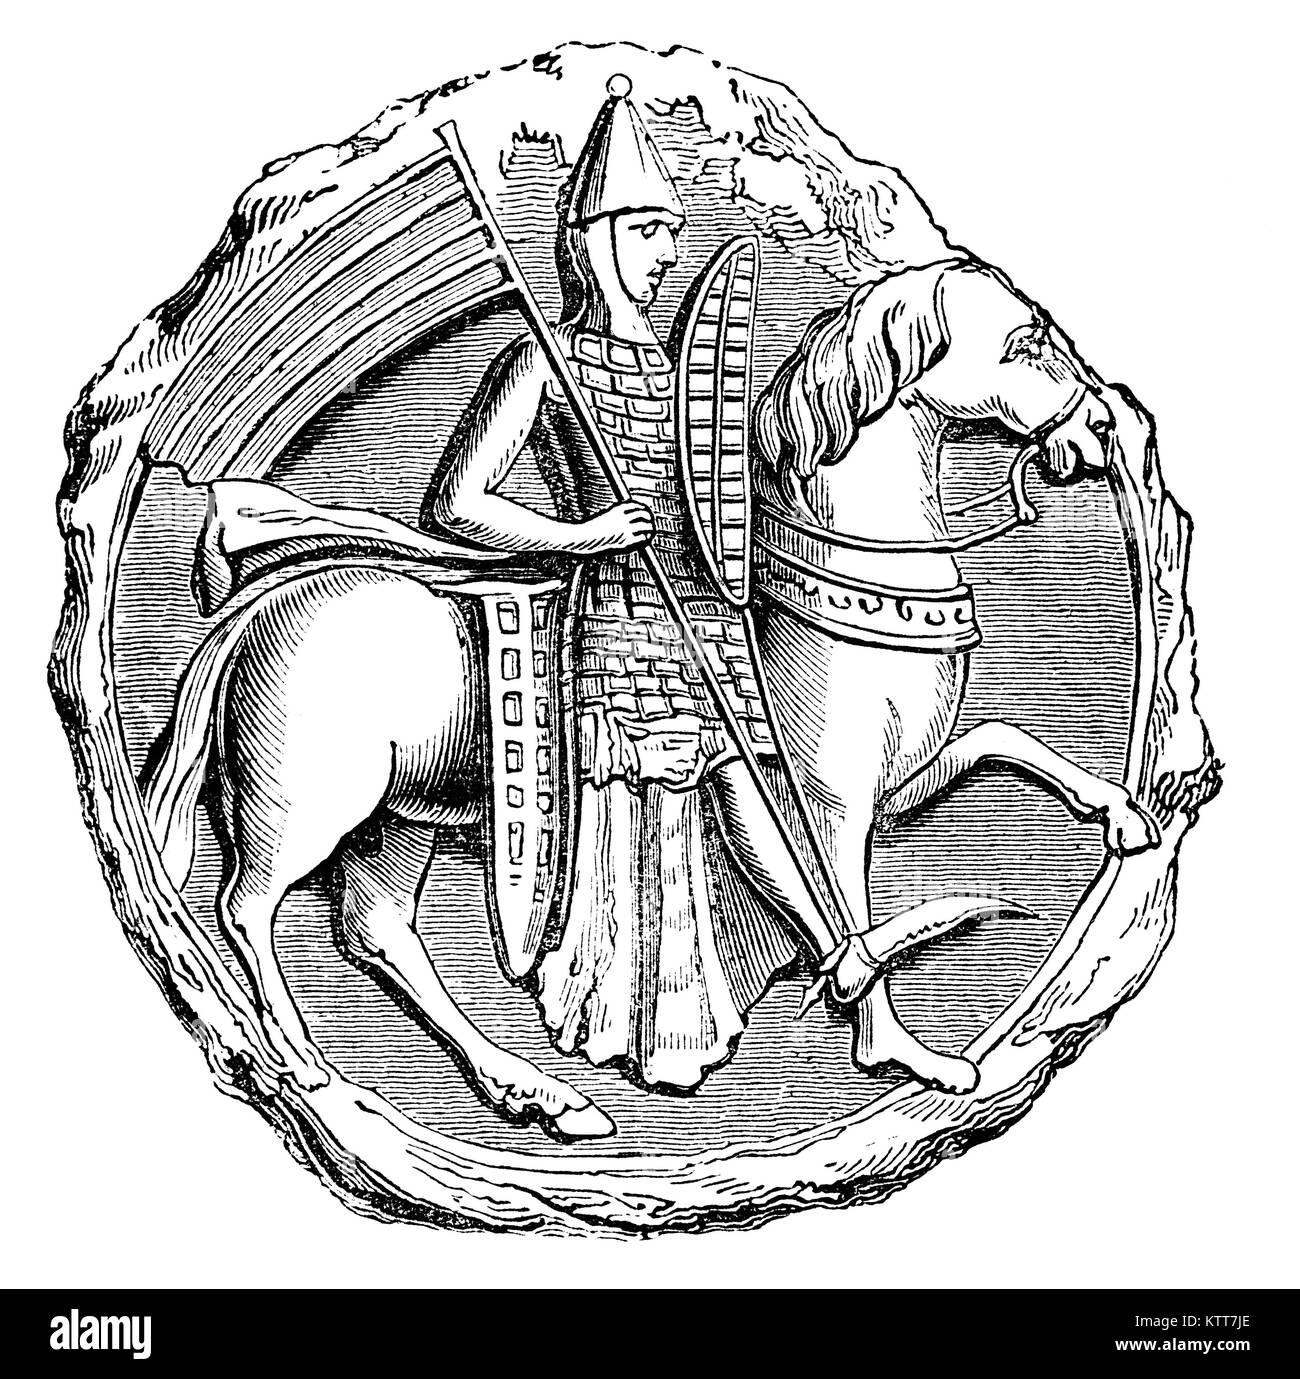 Eine frühe 13. Jahrhundert mittelalterliche Soldaten zu Pferd tragen tegulated Rüstung, die aus kleinen Tellern, wie von Horn oder Metall, Überschneidungen, wie z.b. Fliesen. Stockfoto